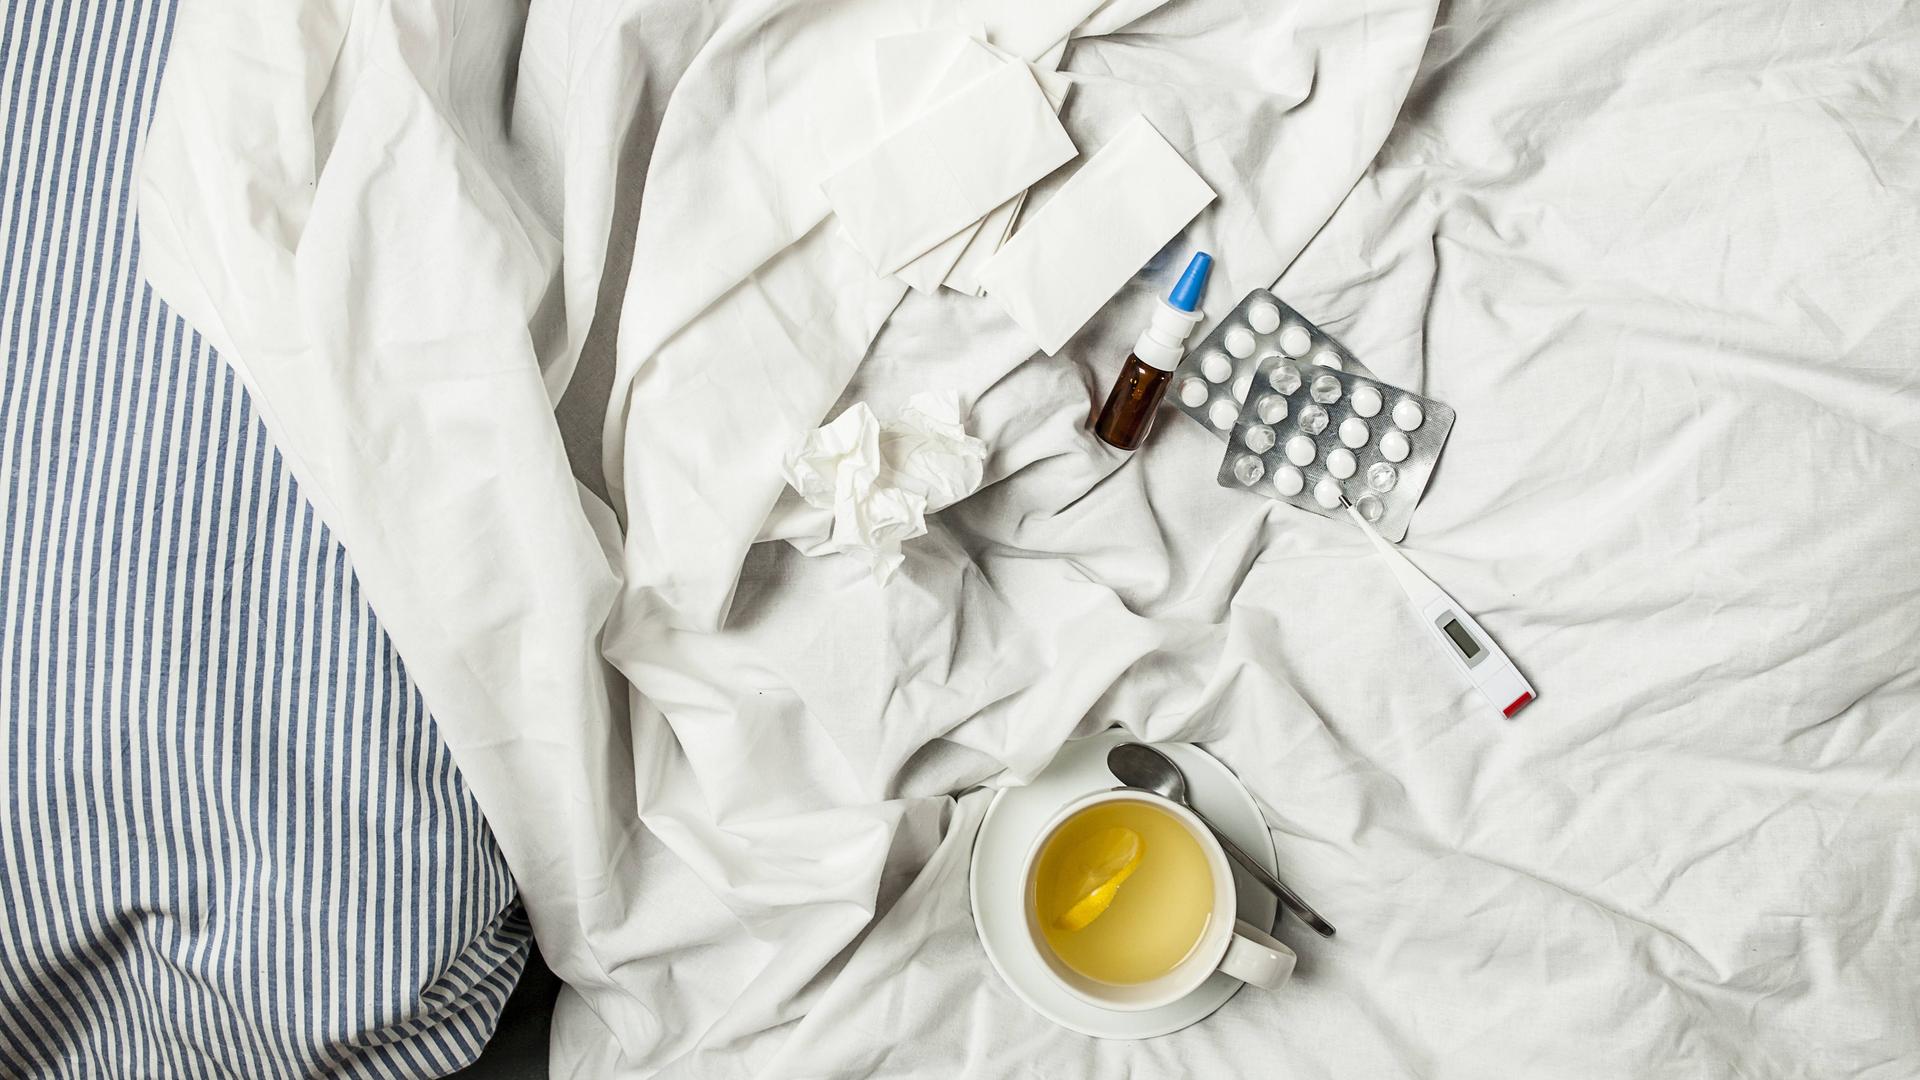 Zitronentee, Fieberthermometer, Tabletten, Nasenspray und benutzte Taschentücher liegen auf einem Bett.